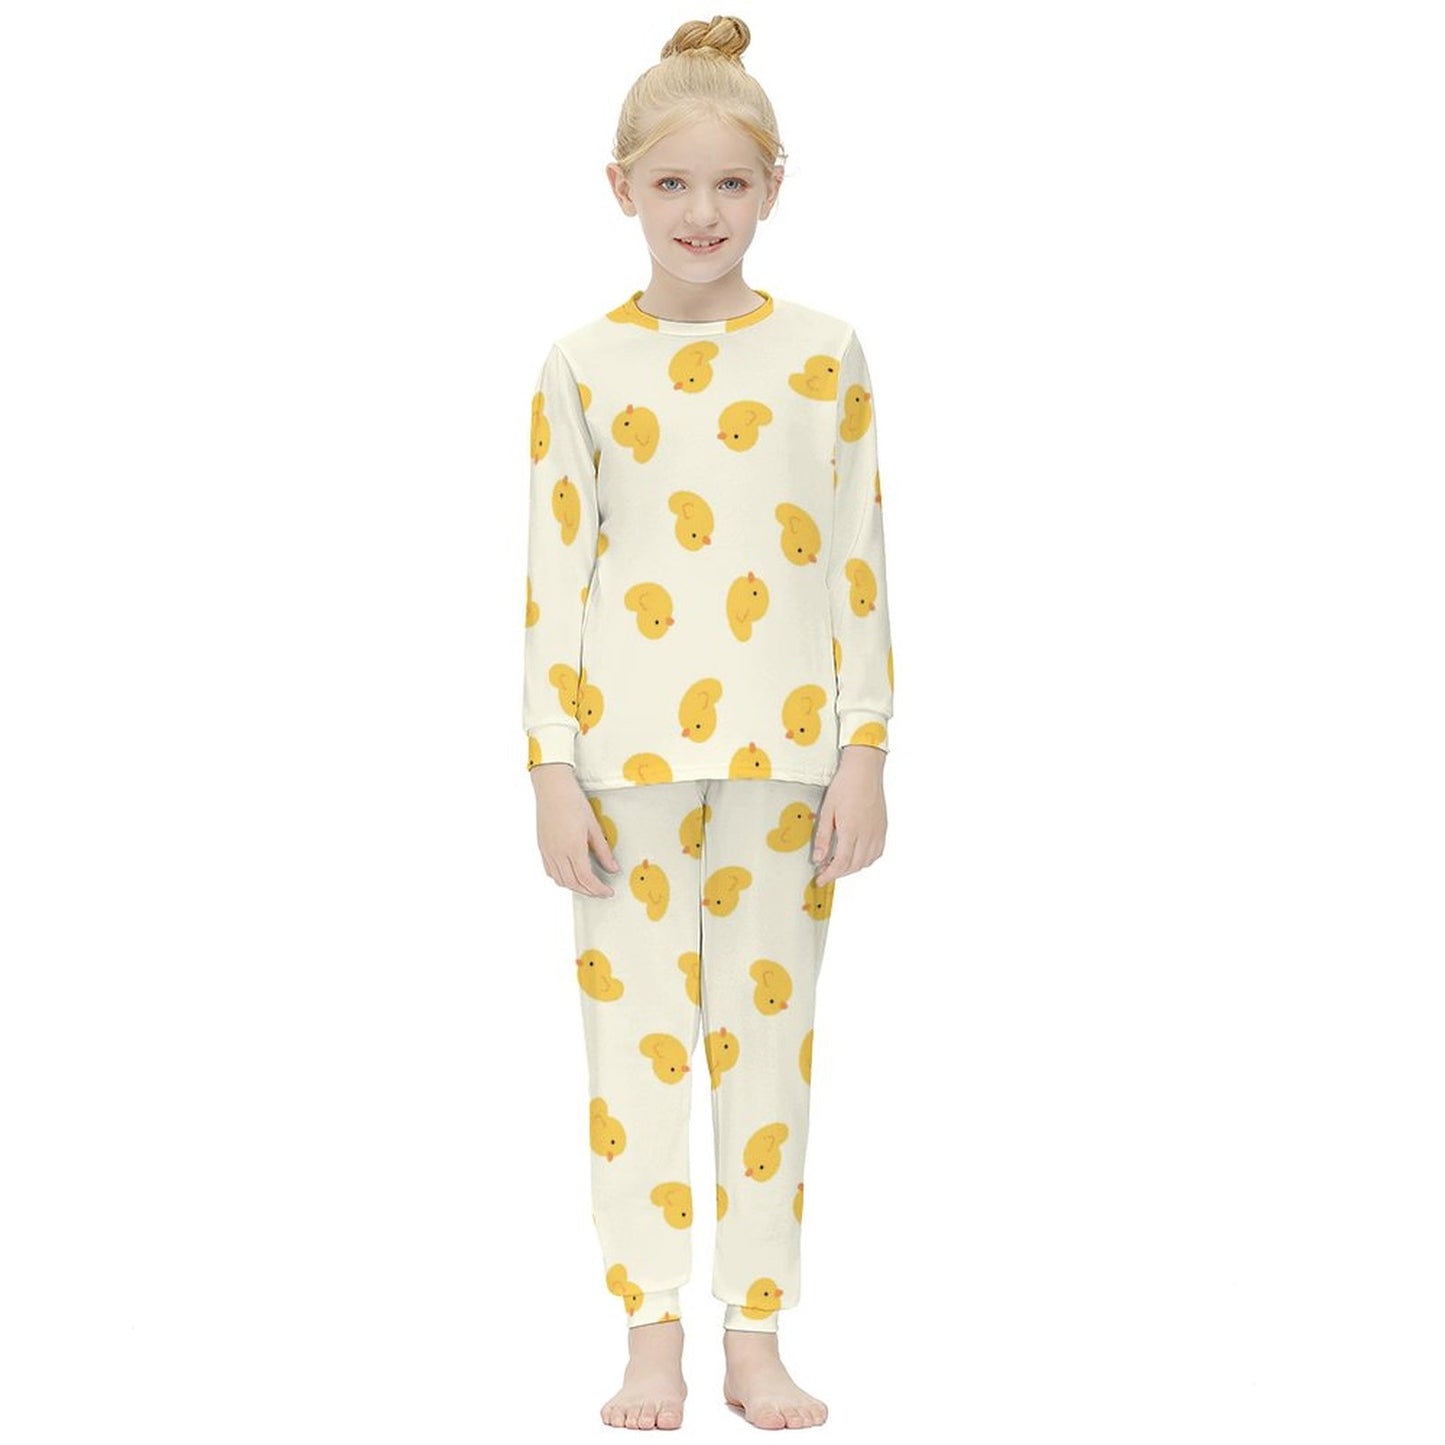 Online DIY Girl's Suit Yellow Duckling